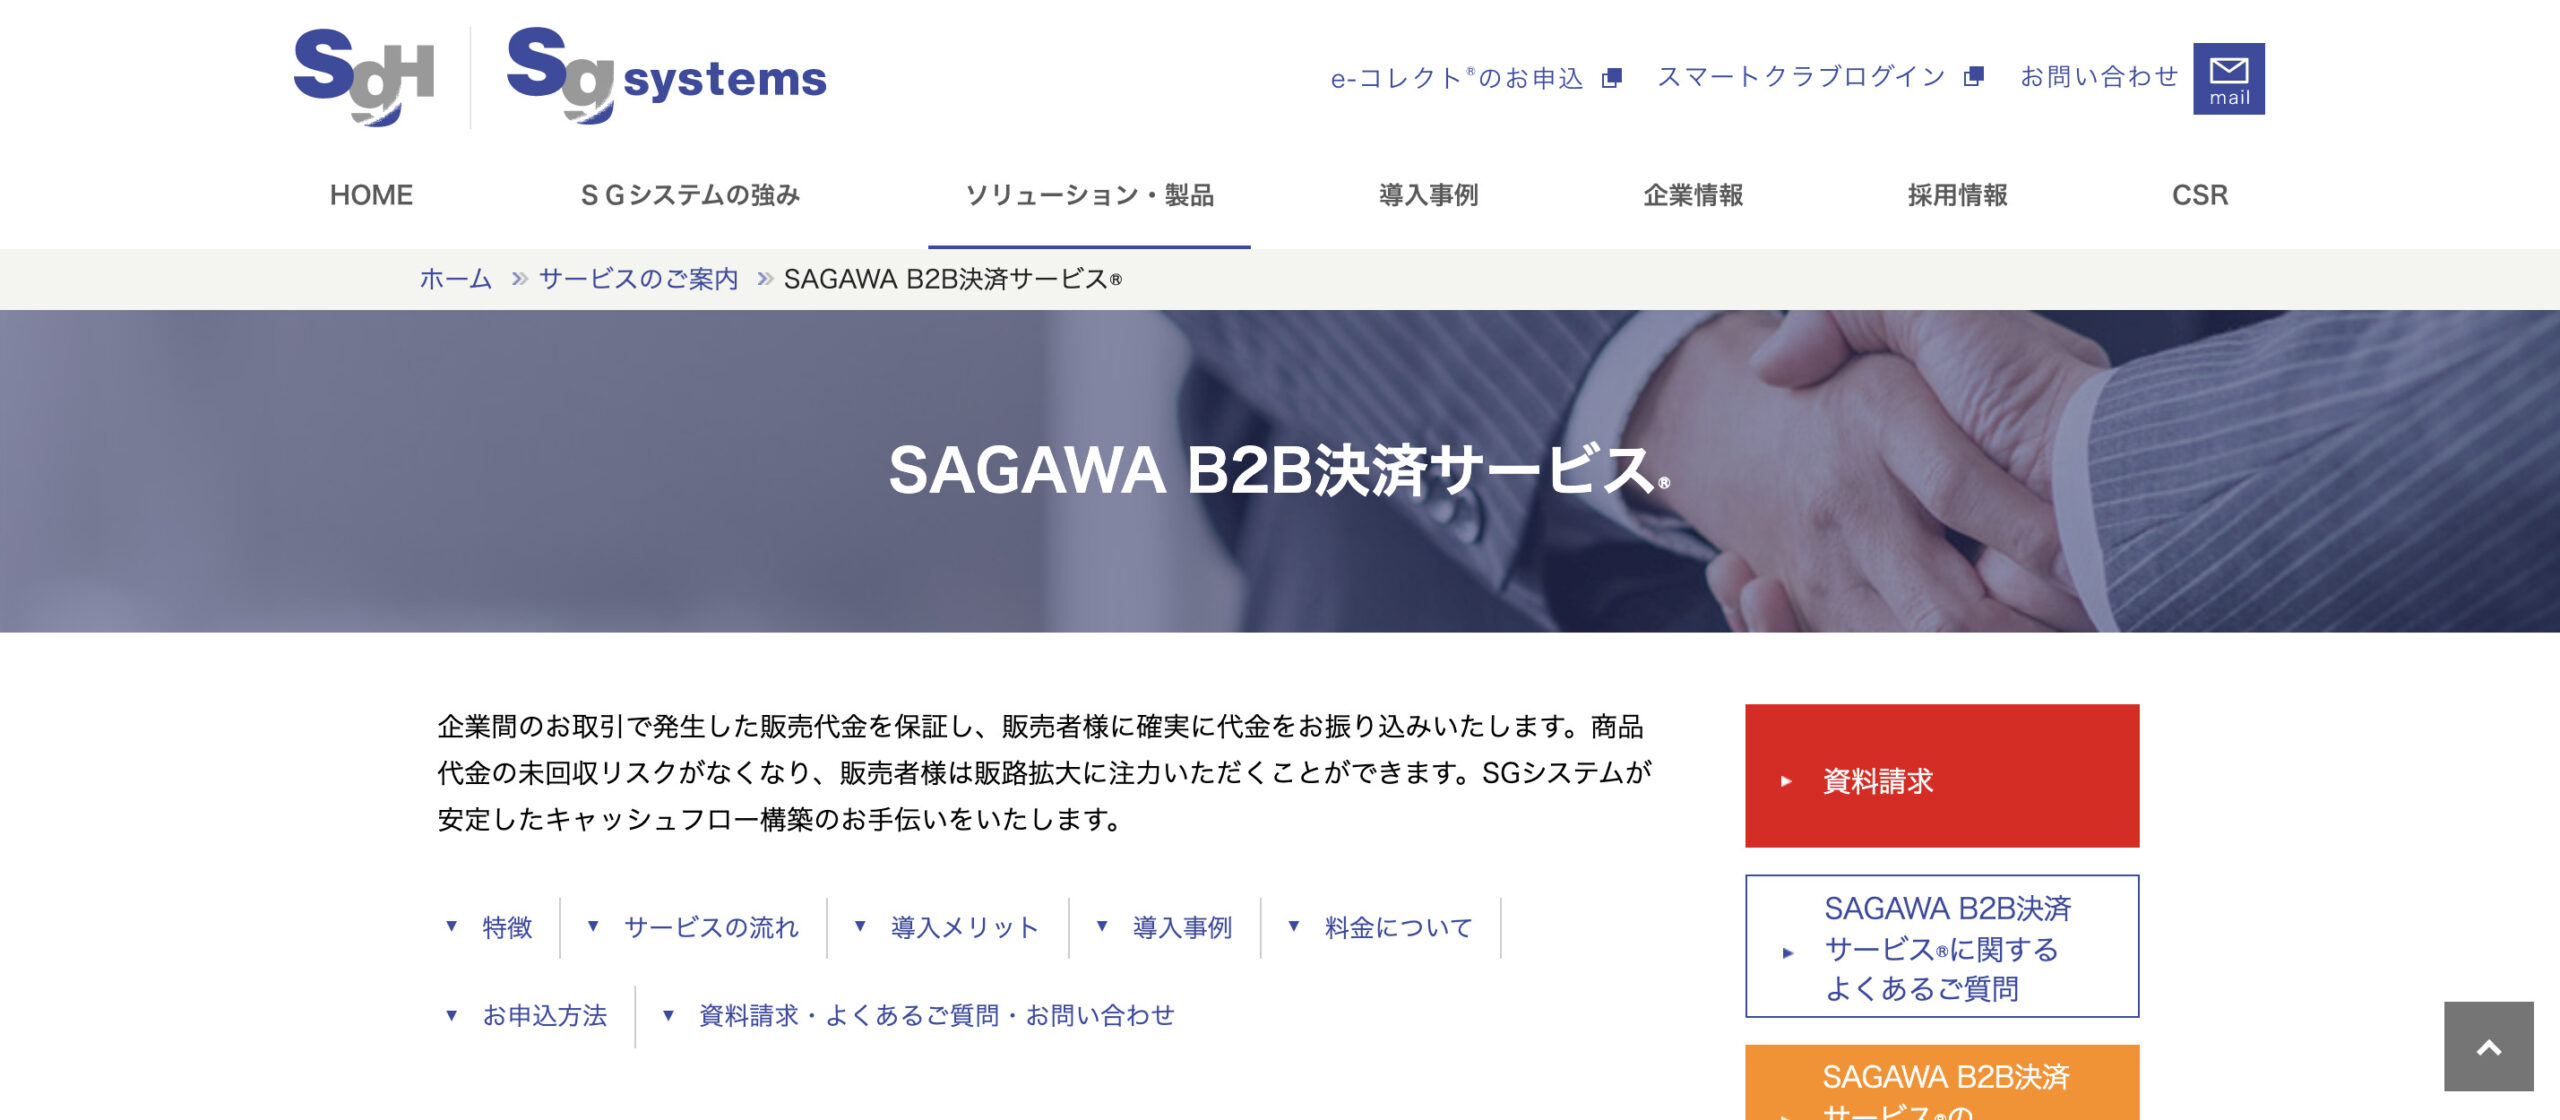 SAGAWA B2B決済サービス